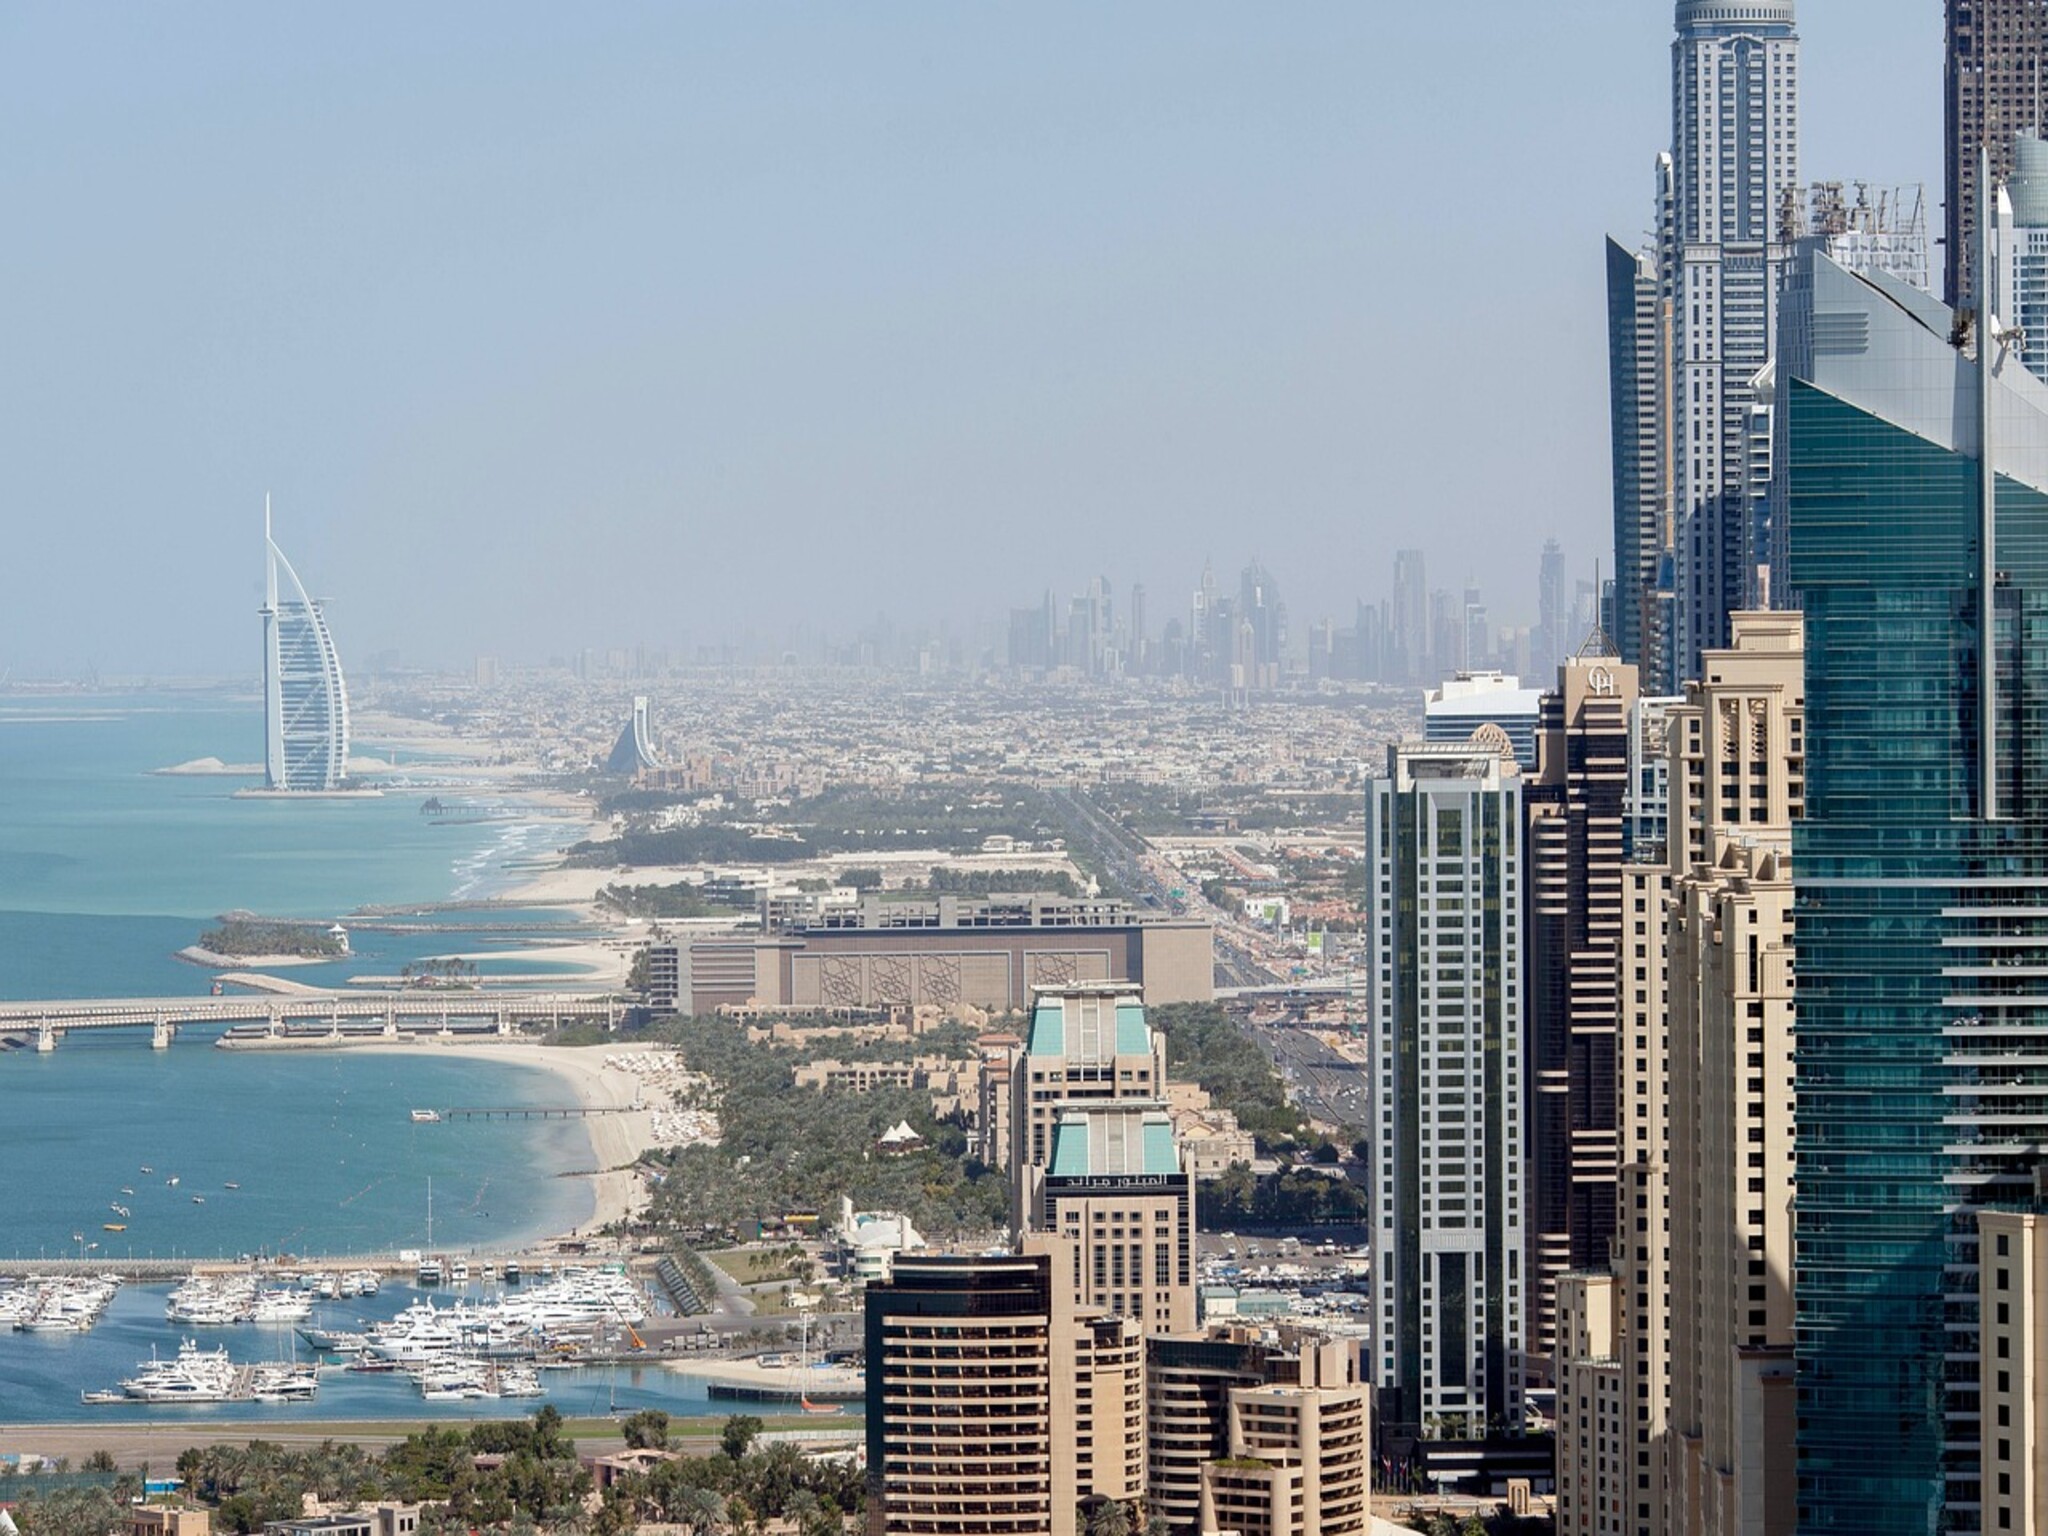 عقارات دبي تحقق أداءً قياسياً خلال مايو لتسجل أعلي نسبة مبيعات منذ عام 2009